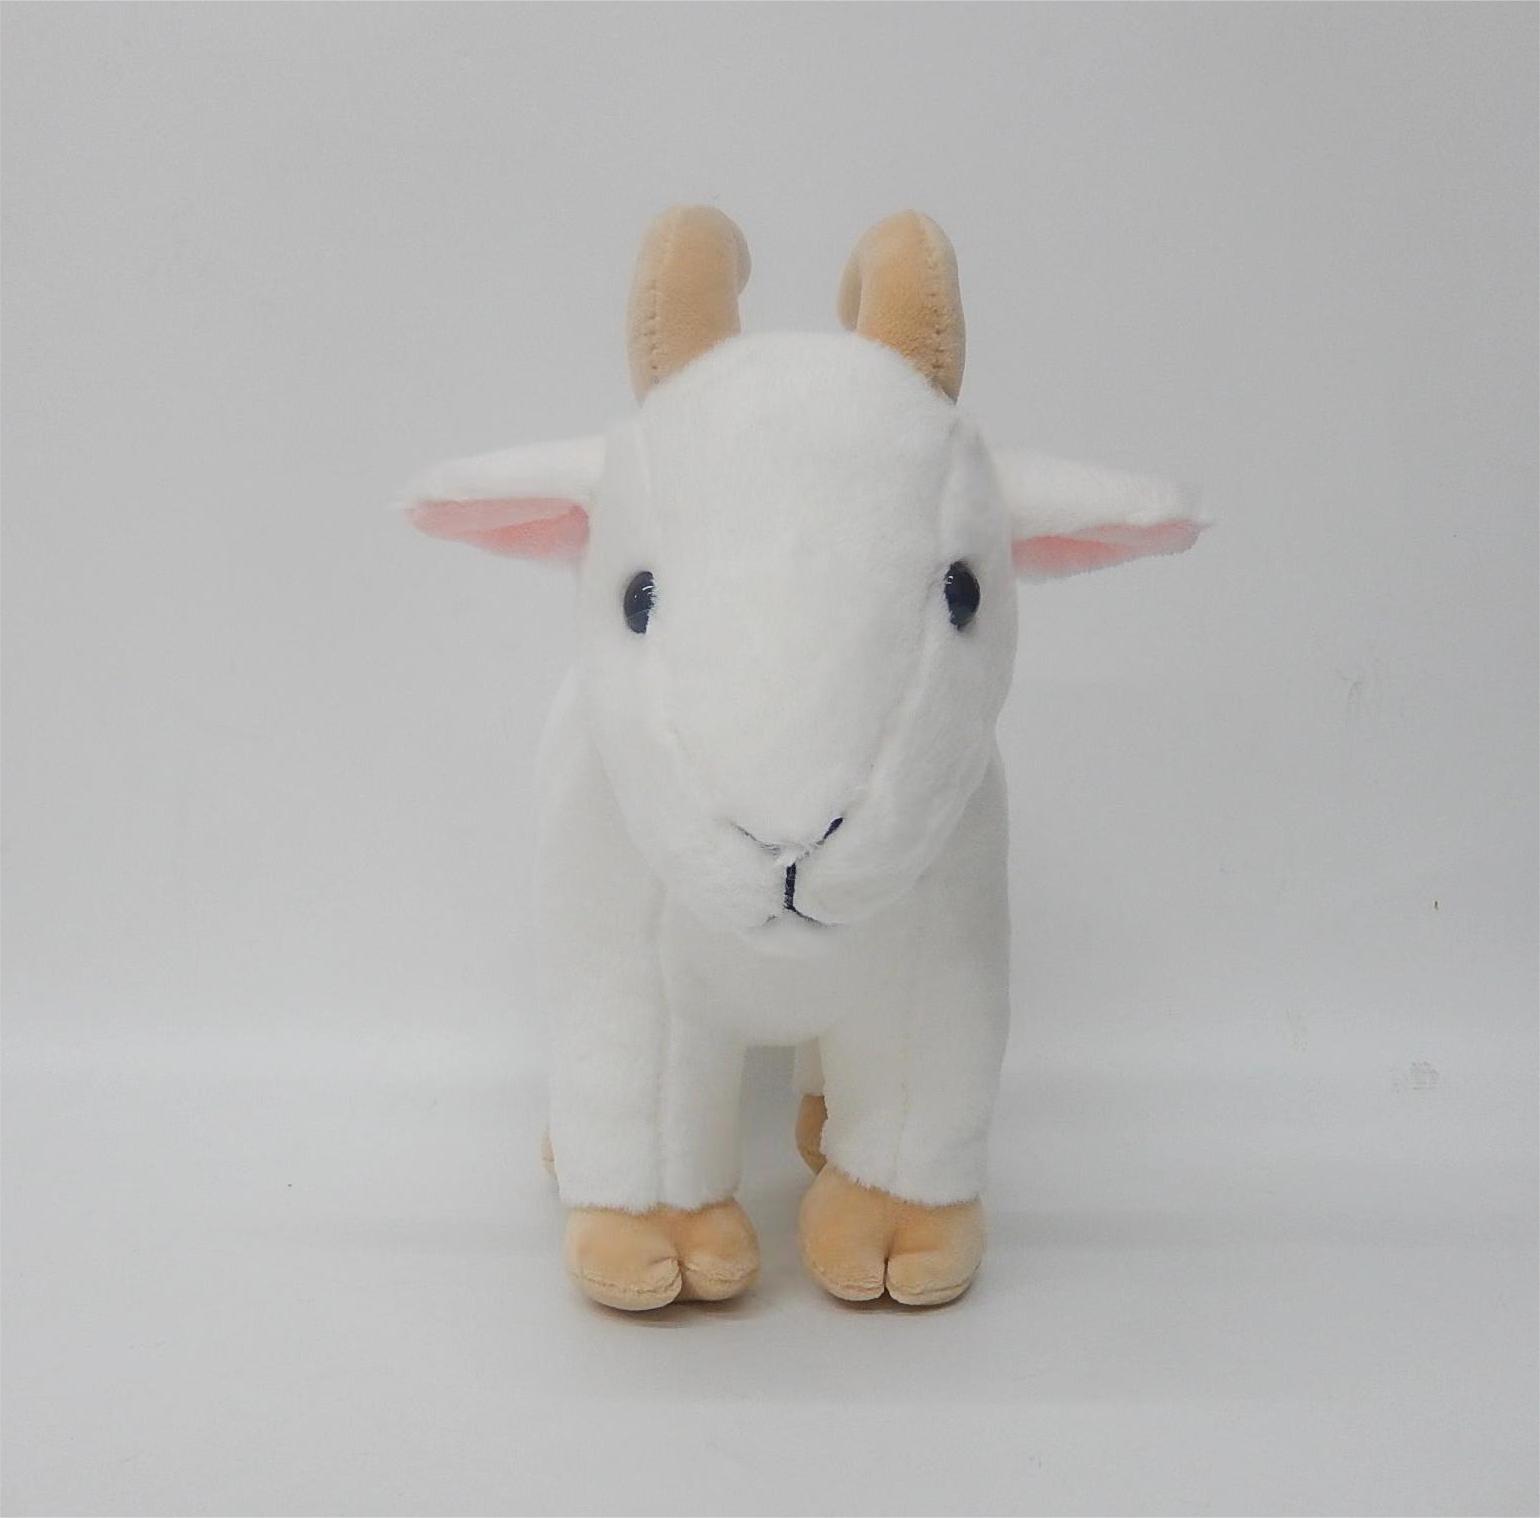  Плюшевая игрушка 'Snuggly Goat', супермягкая 10-дюймовая мягкая игрушка 'коза', очаровательная плюшевая игрушка 'коза' для детей и любителей животных